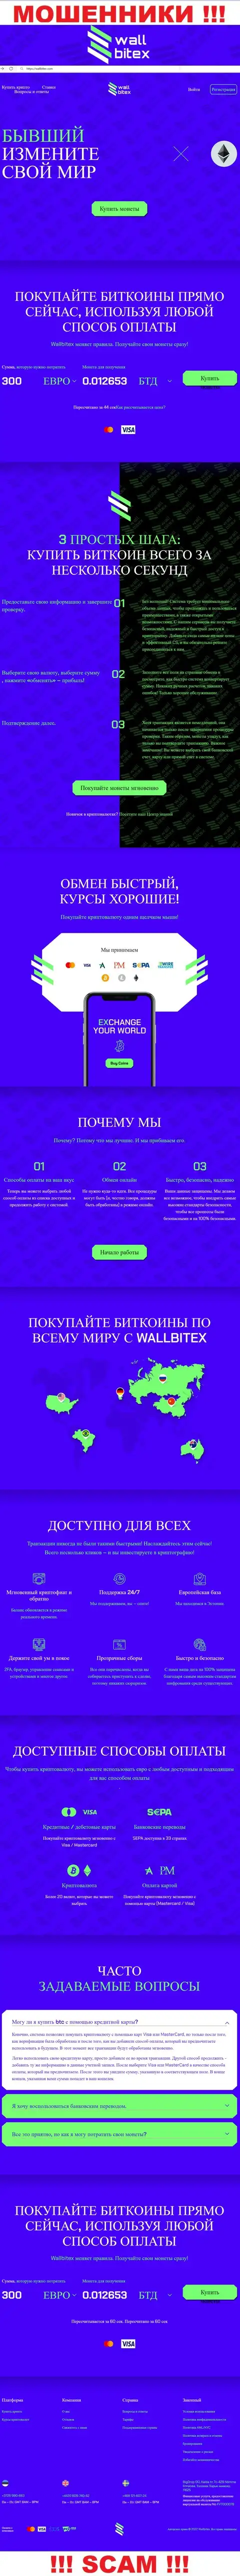 WallBitex Com это официальный информационный портал мошеннической организации WallBitex